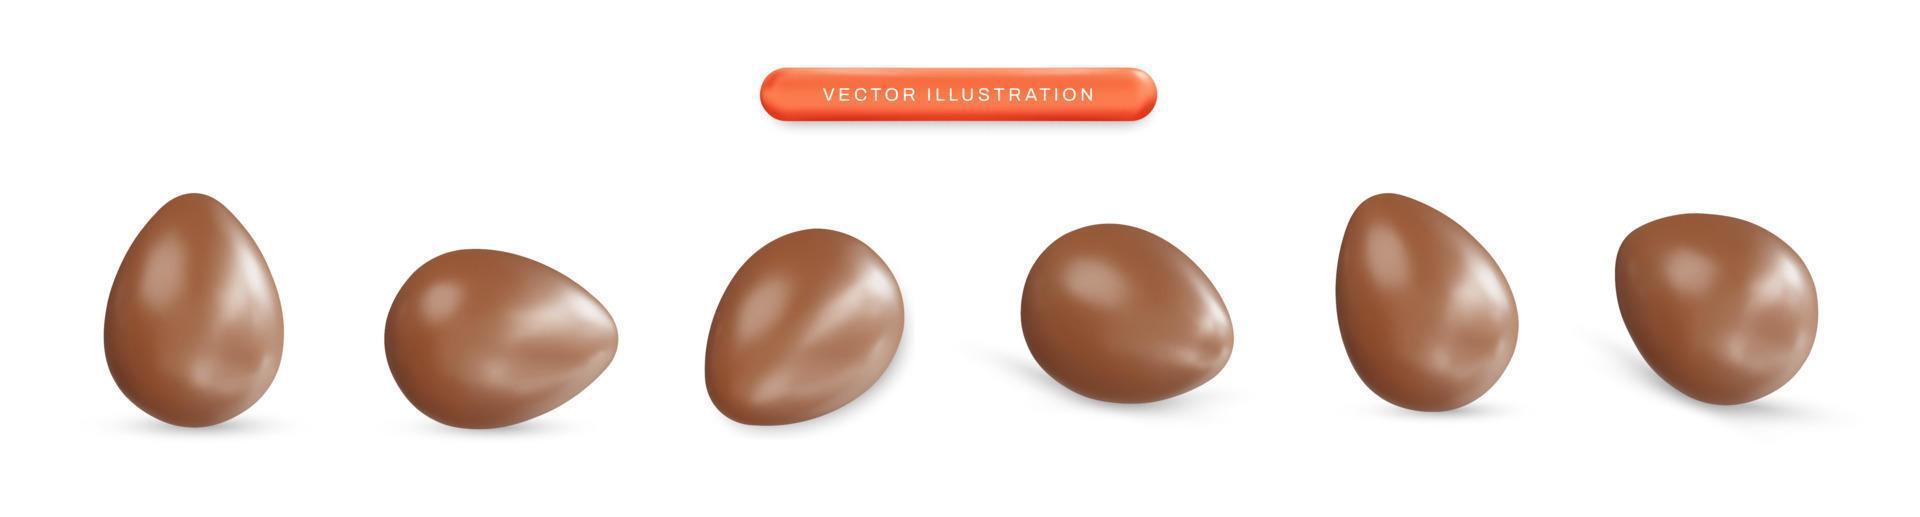 choklad ägg som realistisk 3d vektorillustration vektor